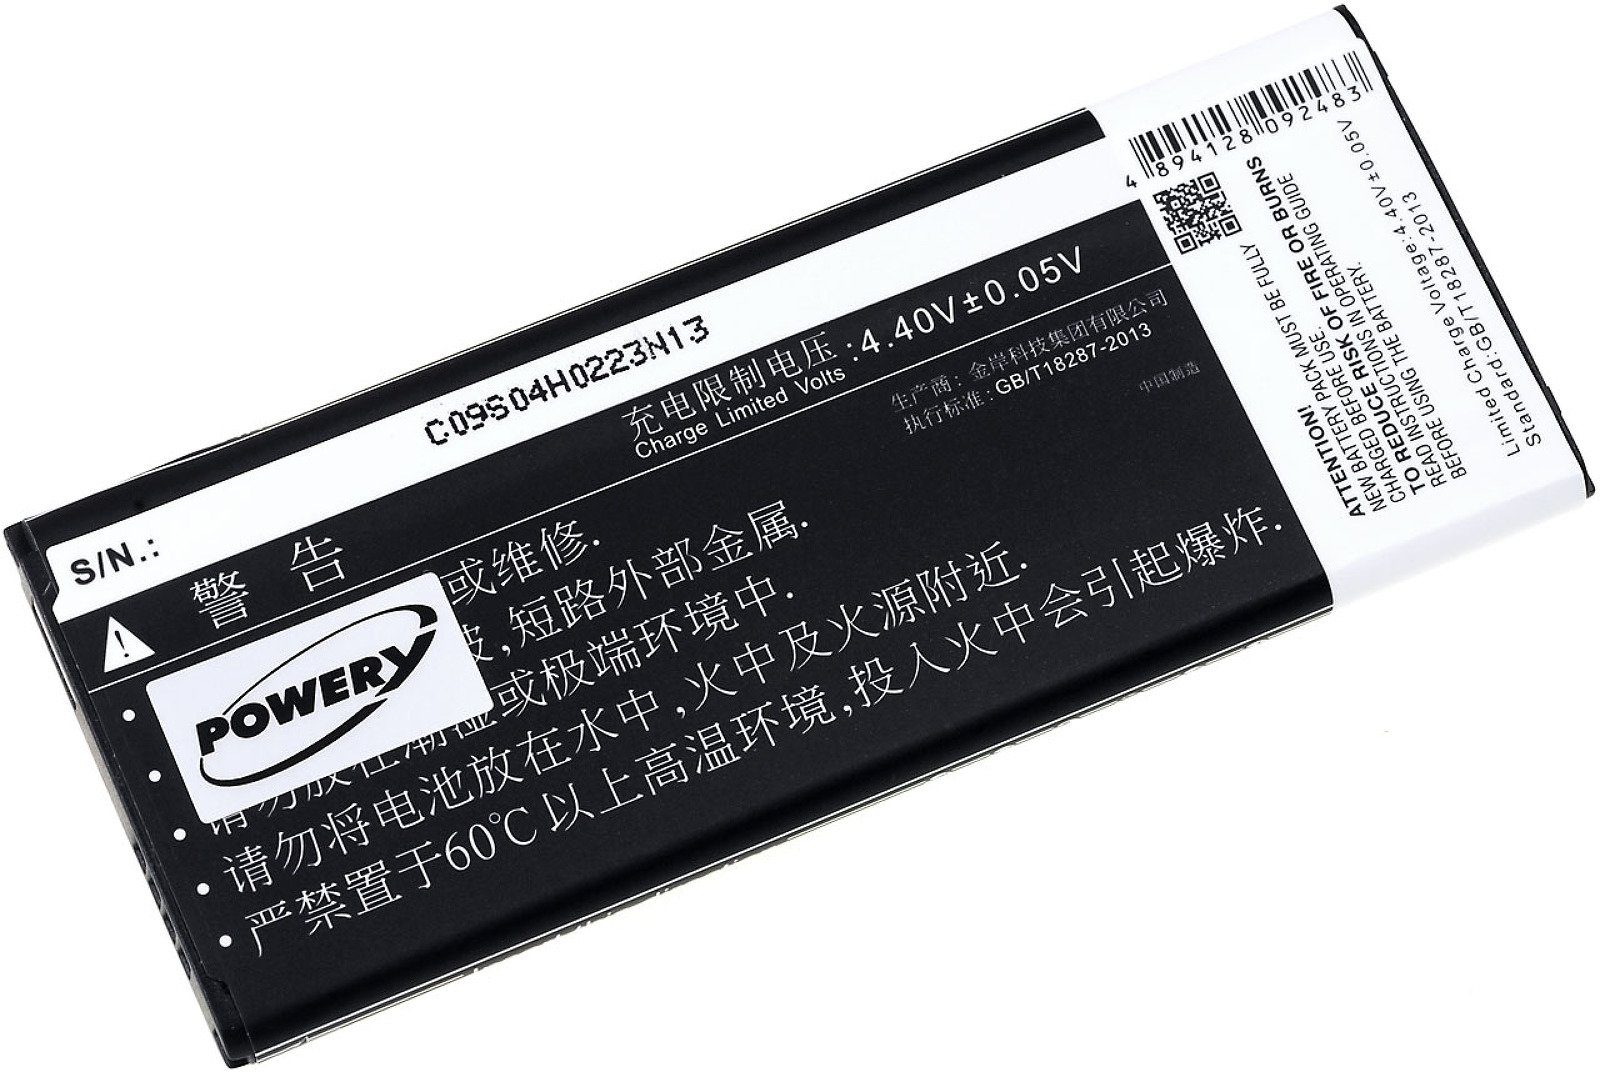 Powery Standardakku für Samsung Smartphone-Akku mit mAh 3000 NFC-Chip (3.85 V) SM-N9108V